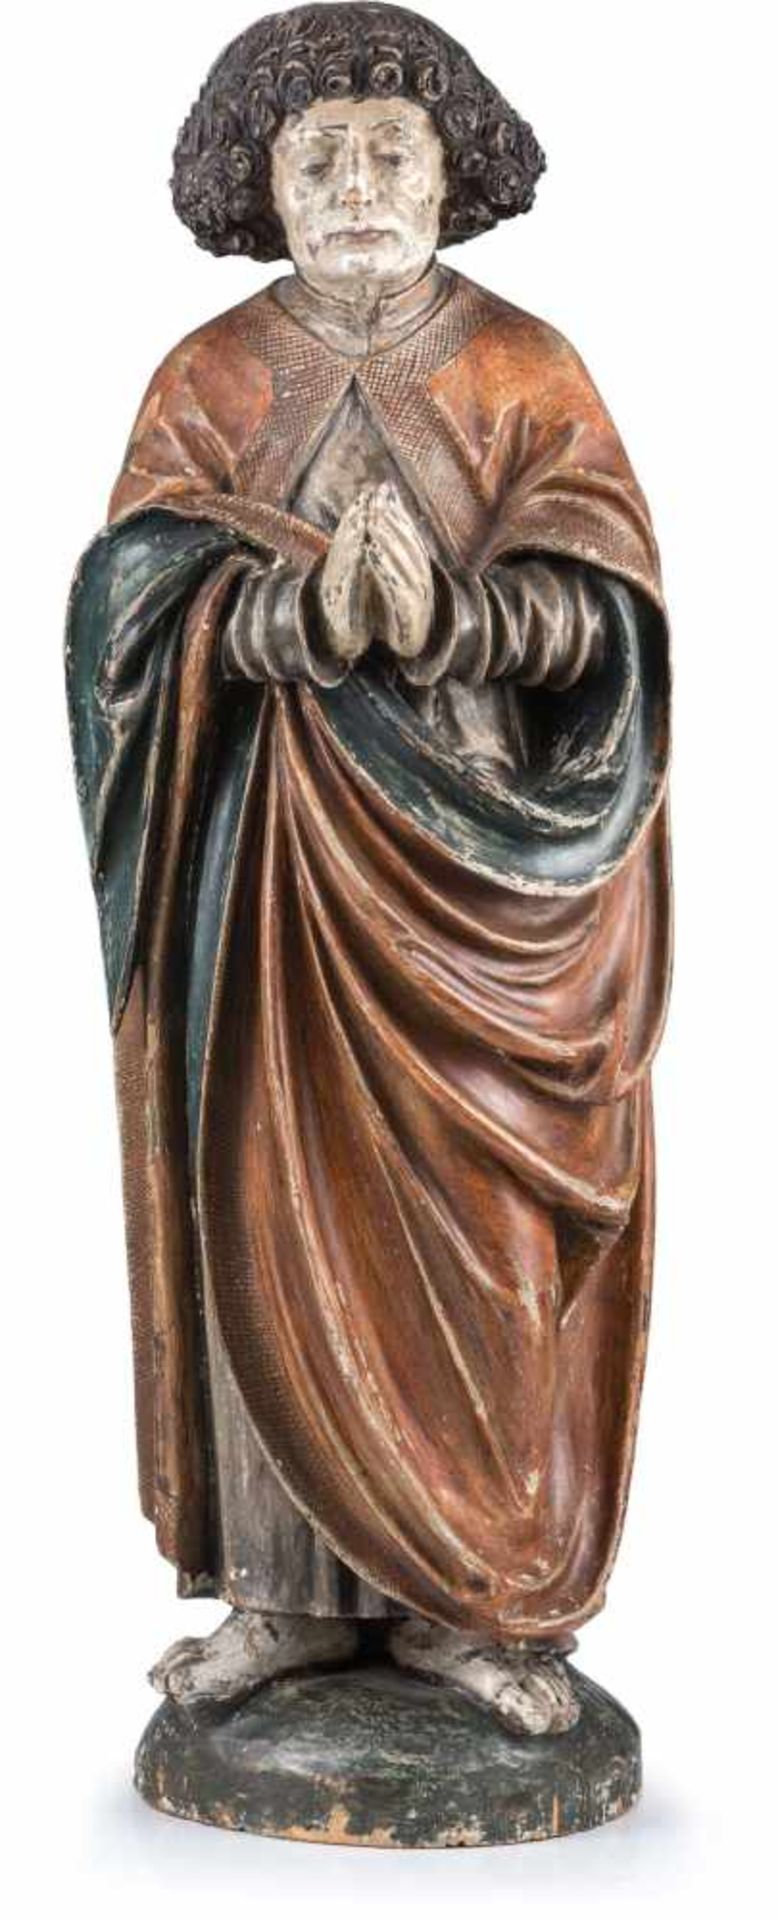 Süddeutscher Bildhauer (15. Jh.) , Riemenschneider UmkreisHl. JohannesMit grün-rotem Gewand, betend.